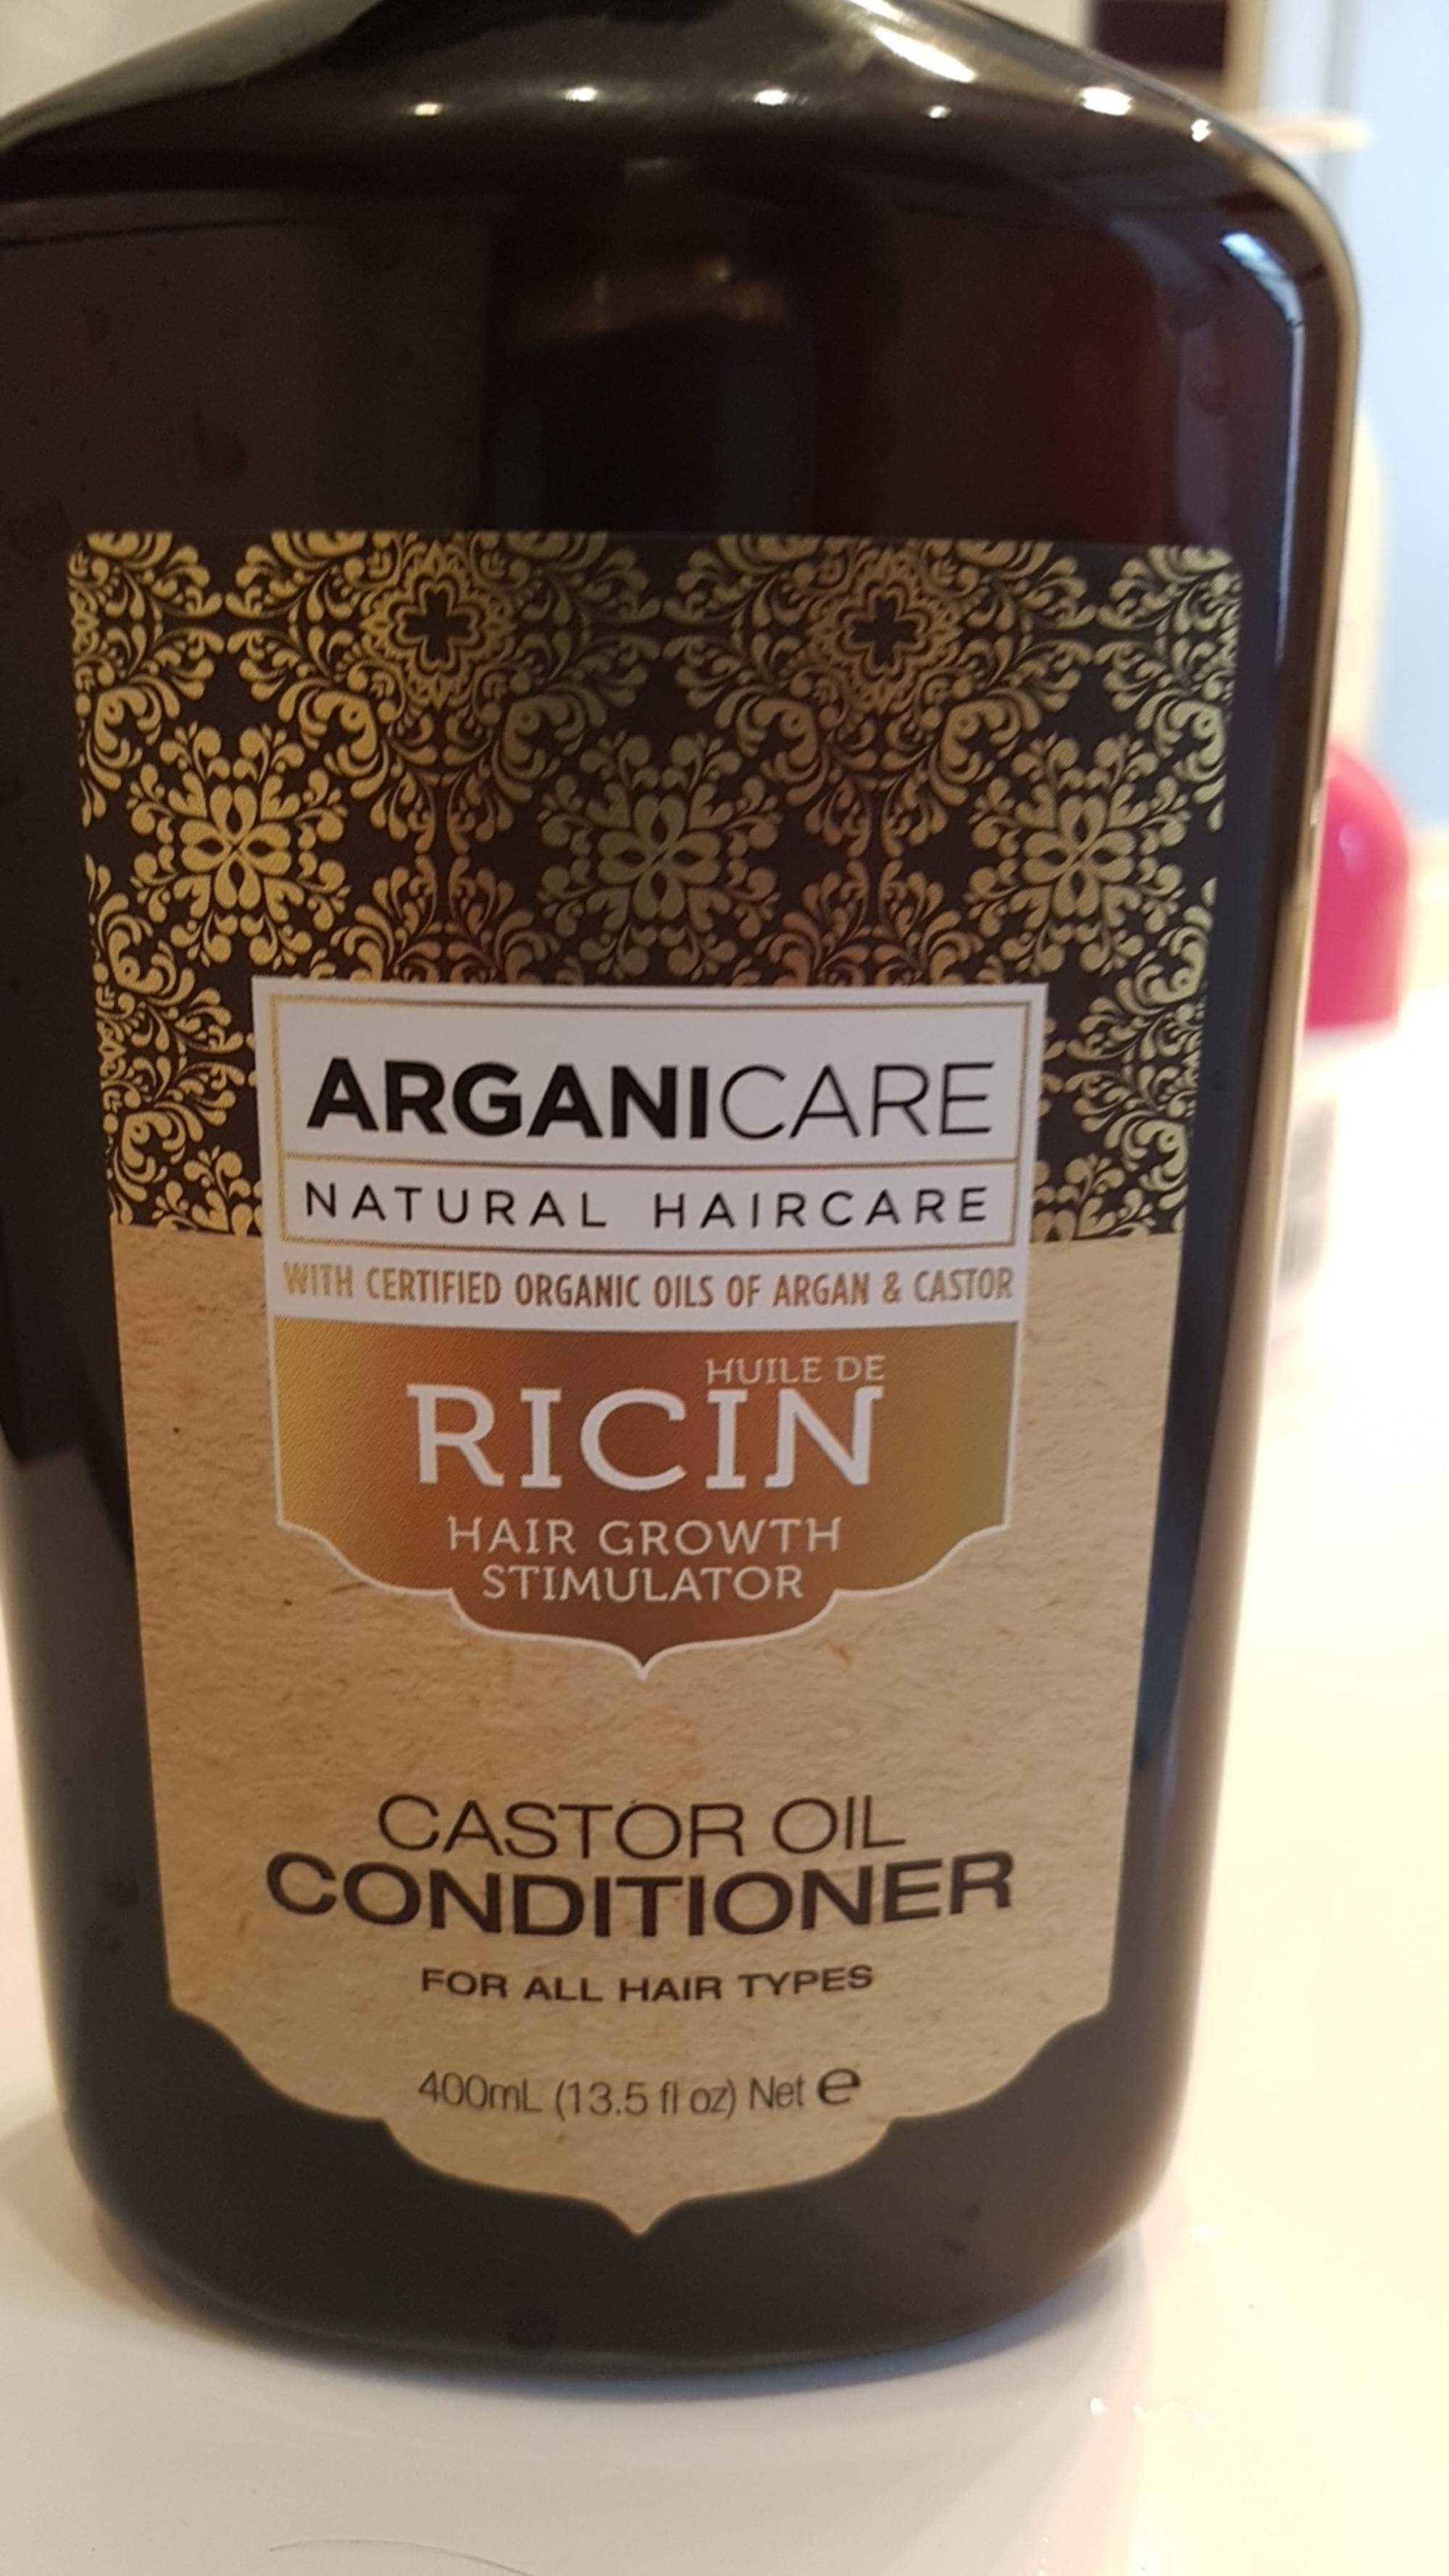 ARGANICARE - Huile de Ricin - Hair growth stimulator - Castor oil conditioner